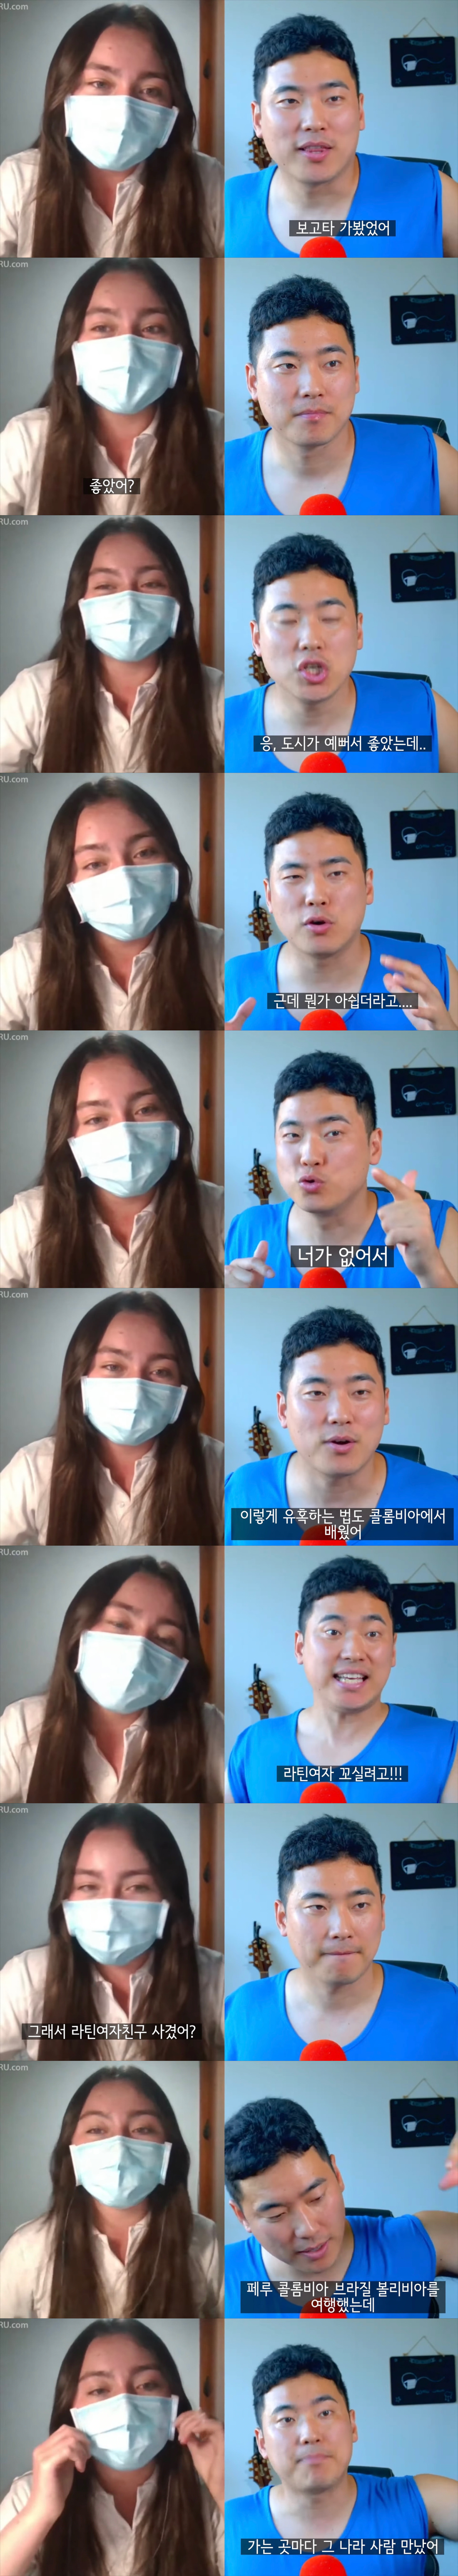 콜롬비아녀를 중국인이라한 한국인jpg